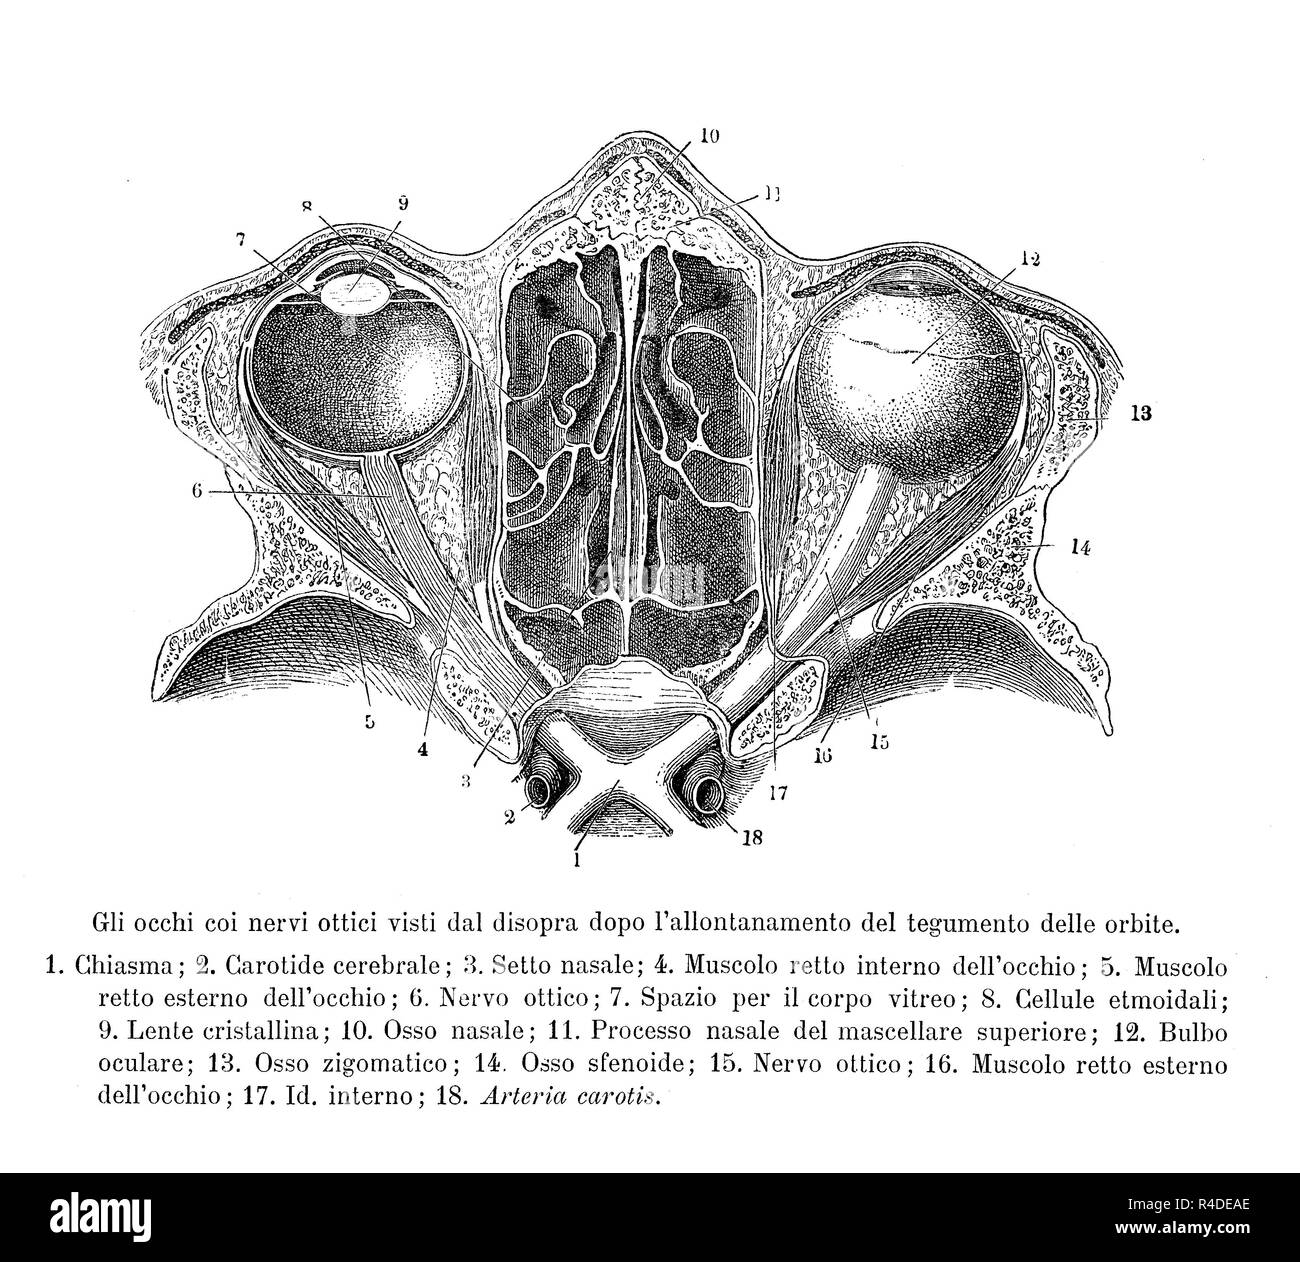 Vintage illustration de l'anatomie, la section transversale des droits de l'optique supérieure de nerfs, avec des descriptions anatomiques en italien Banque D'Images